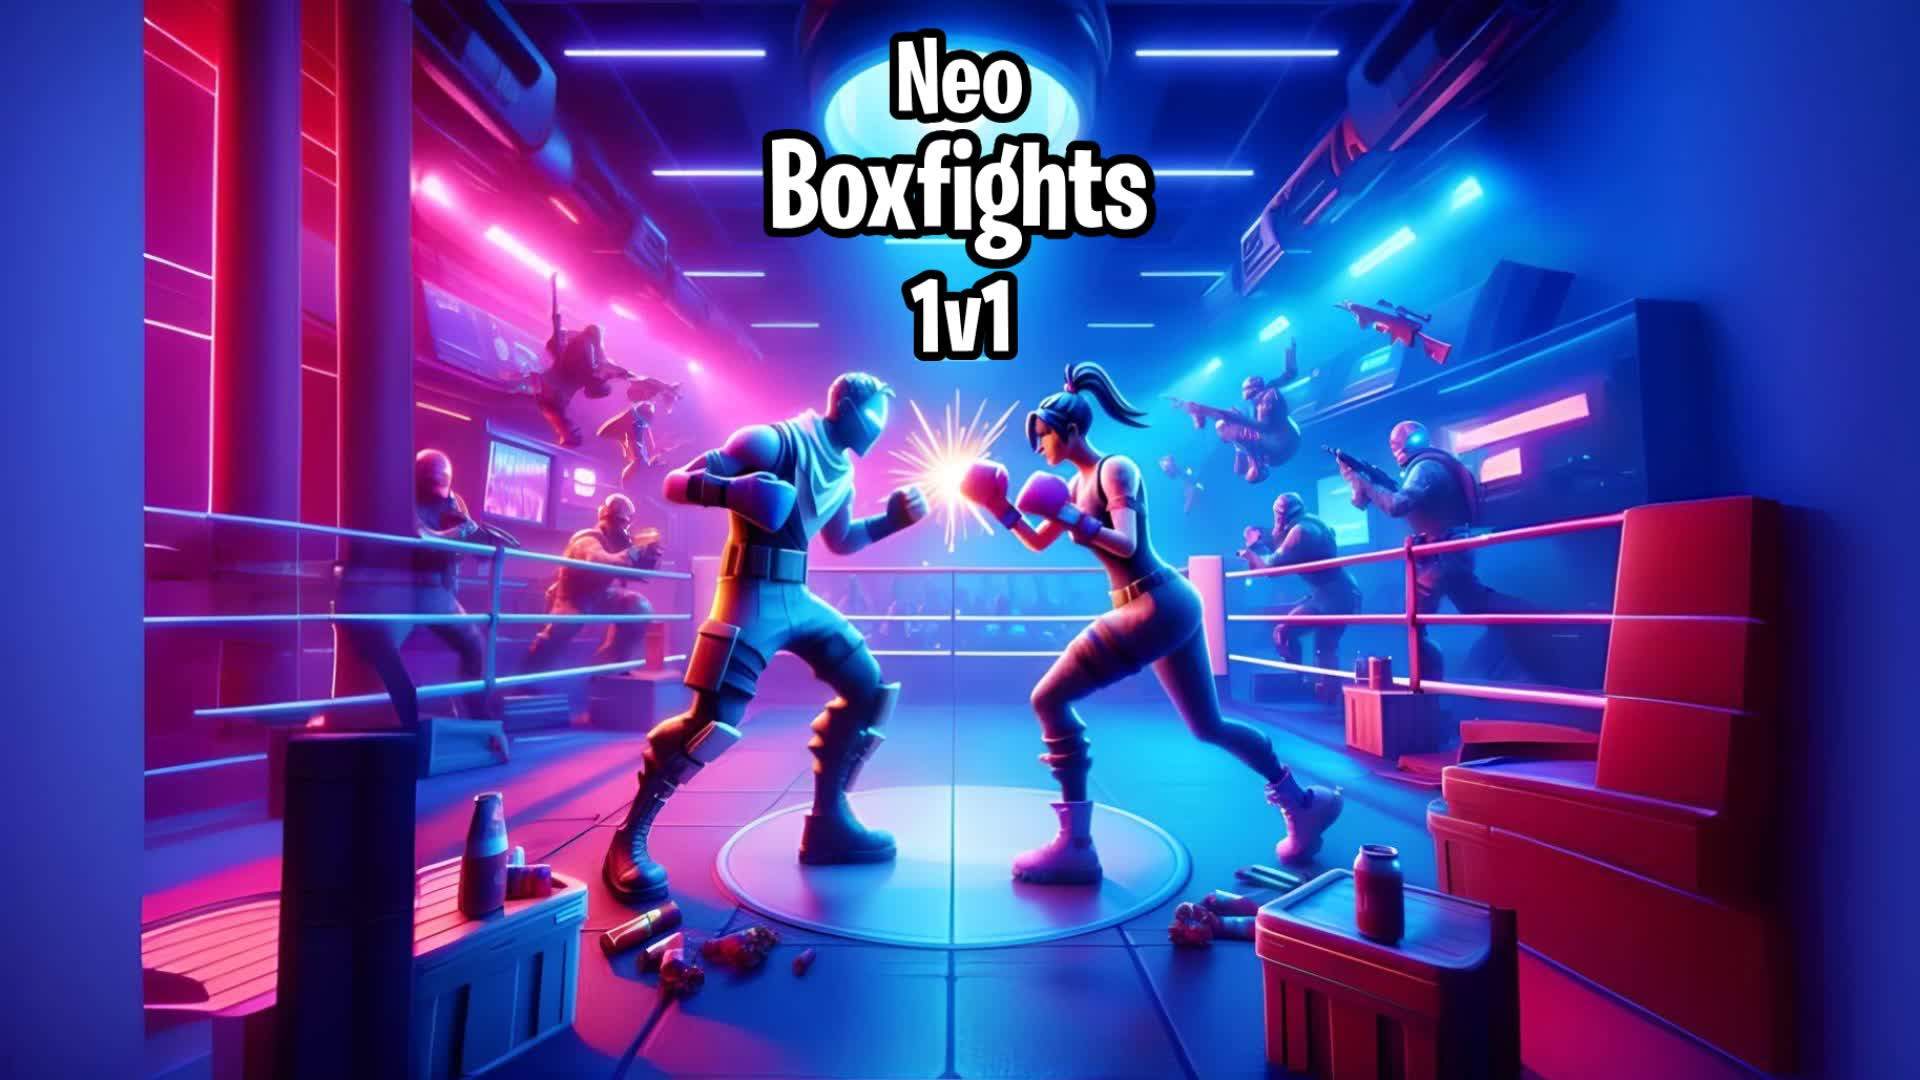 Neo 1v1 Boxfights